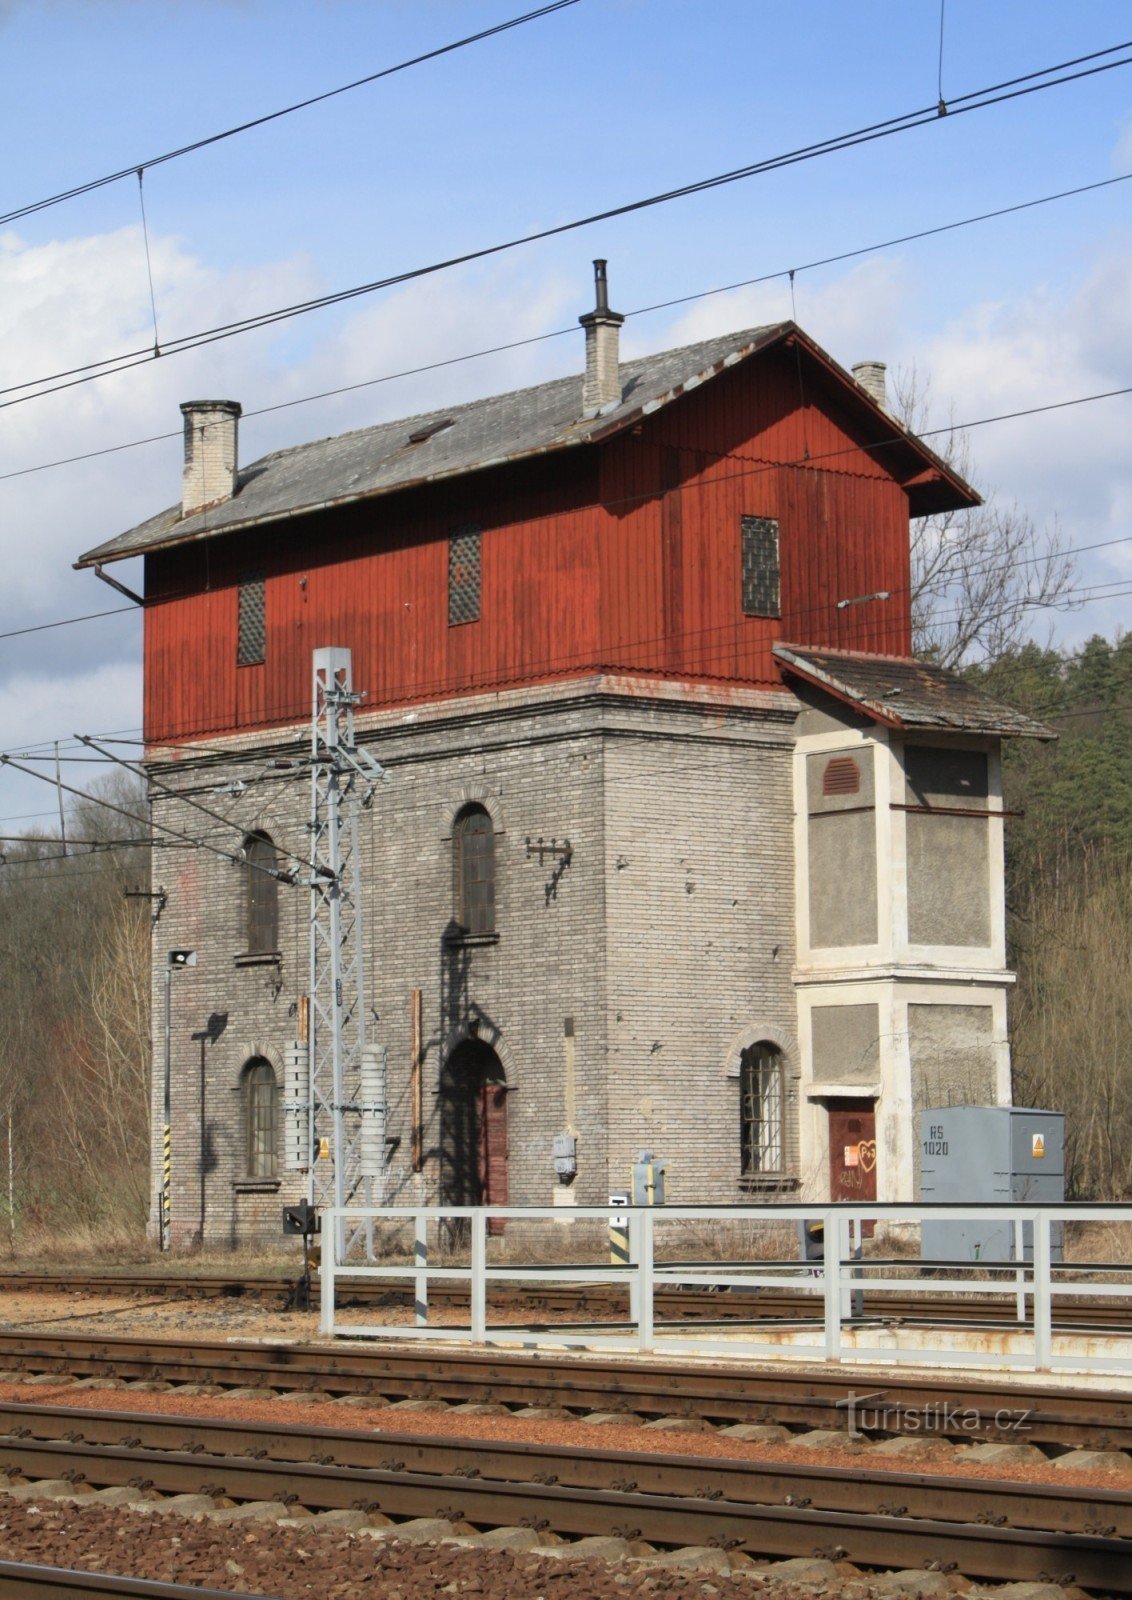 Skalice nad Svitavou - dawna stacja wodociągowa